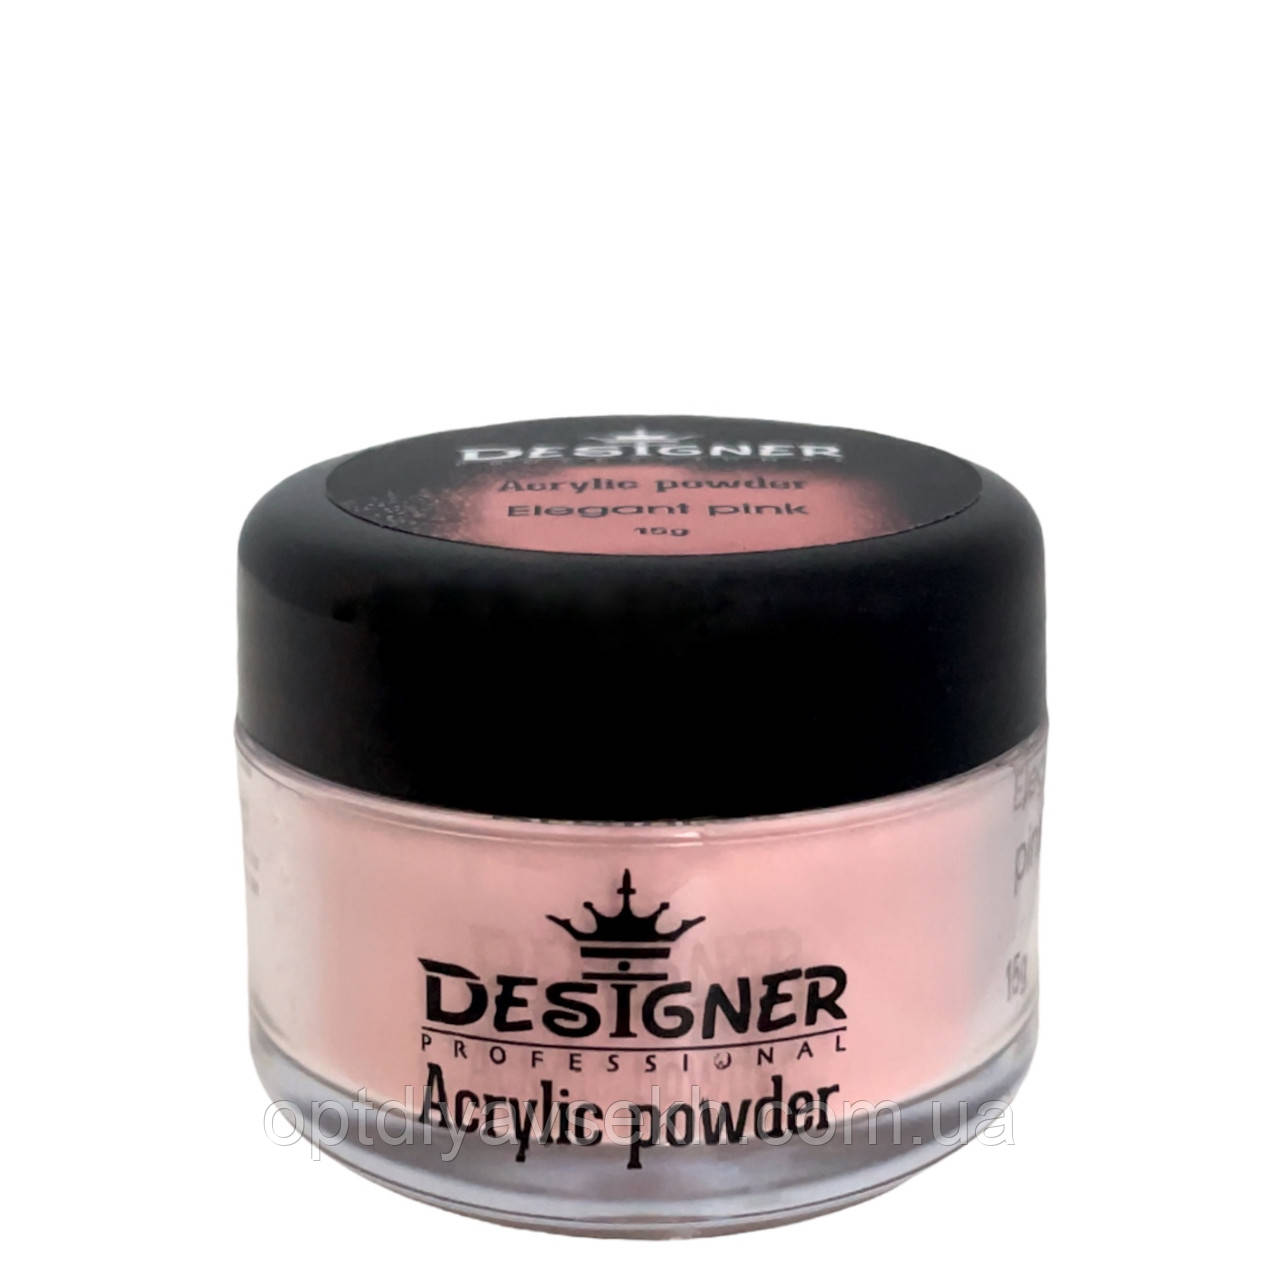 Акрилова пудра/Acrylic powder 15 г. для зміцнення нігтів Дизайнер Elegant pink